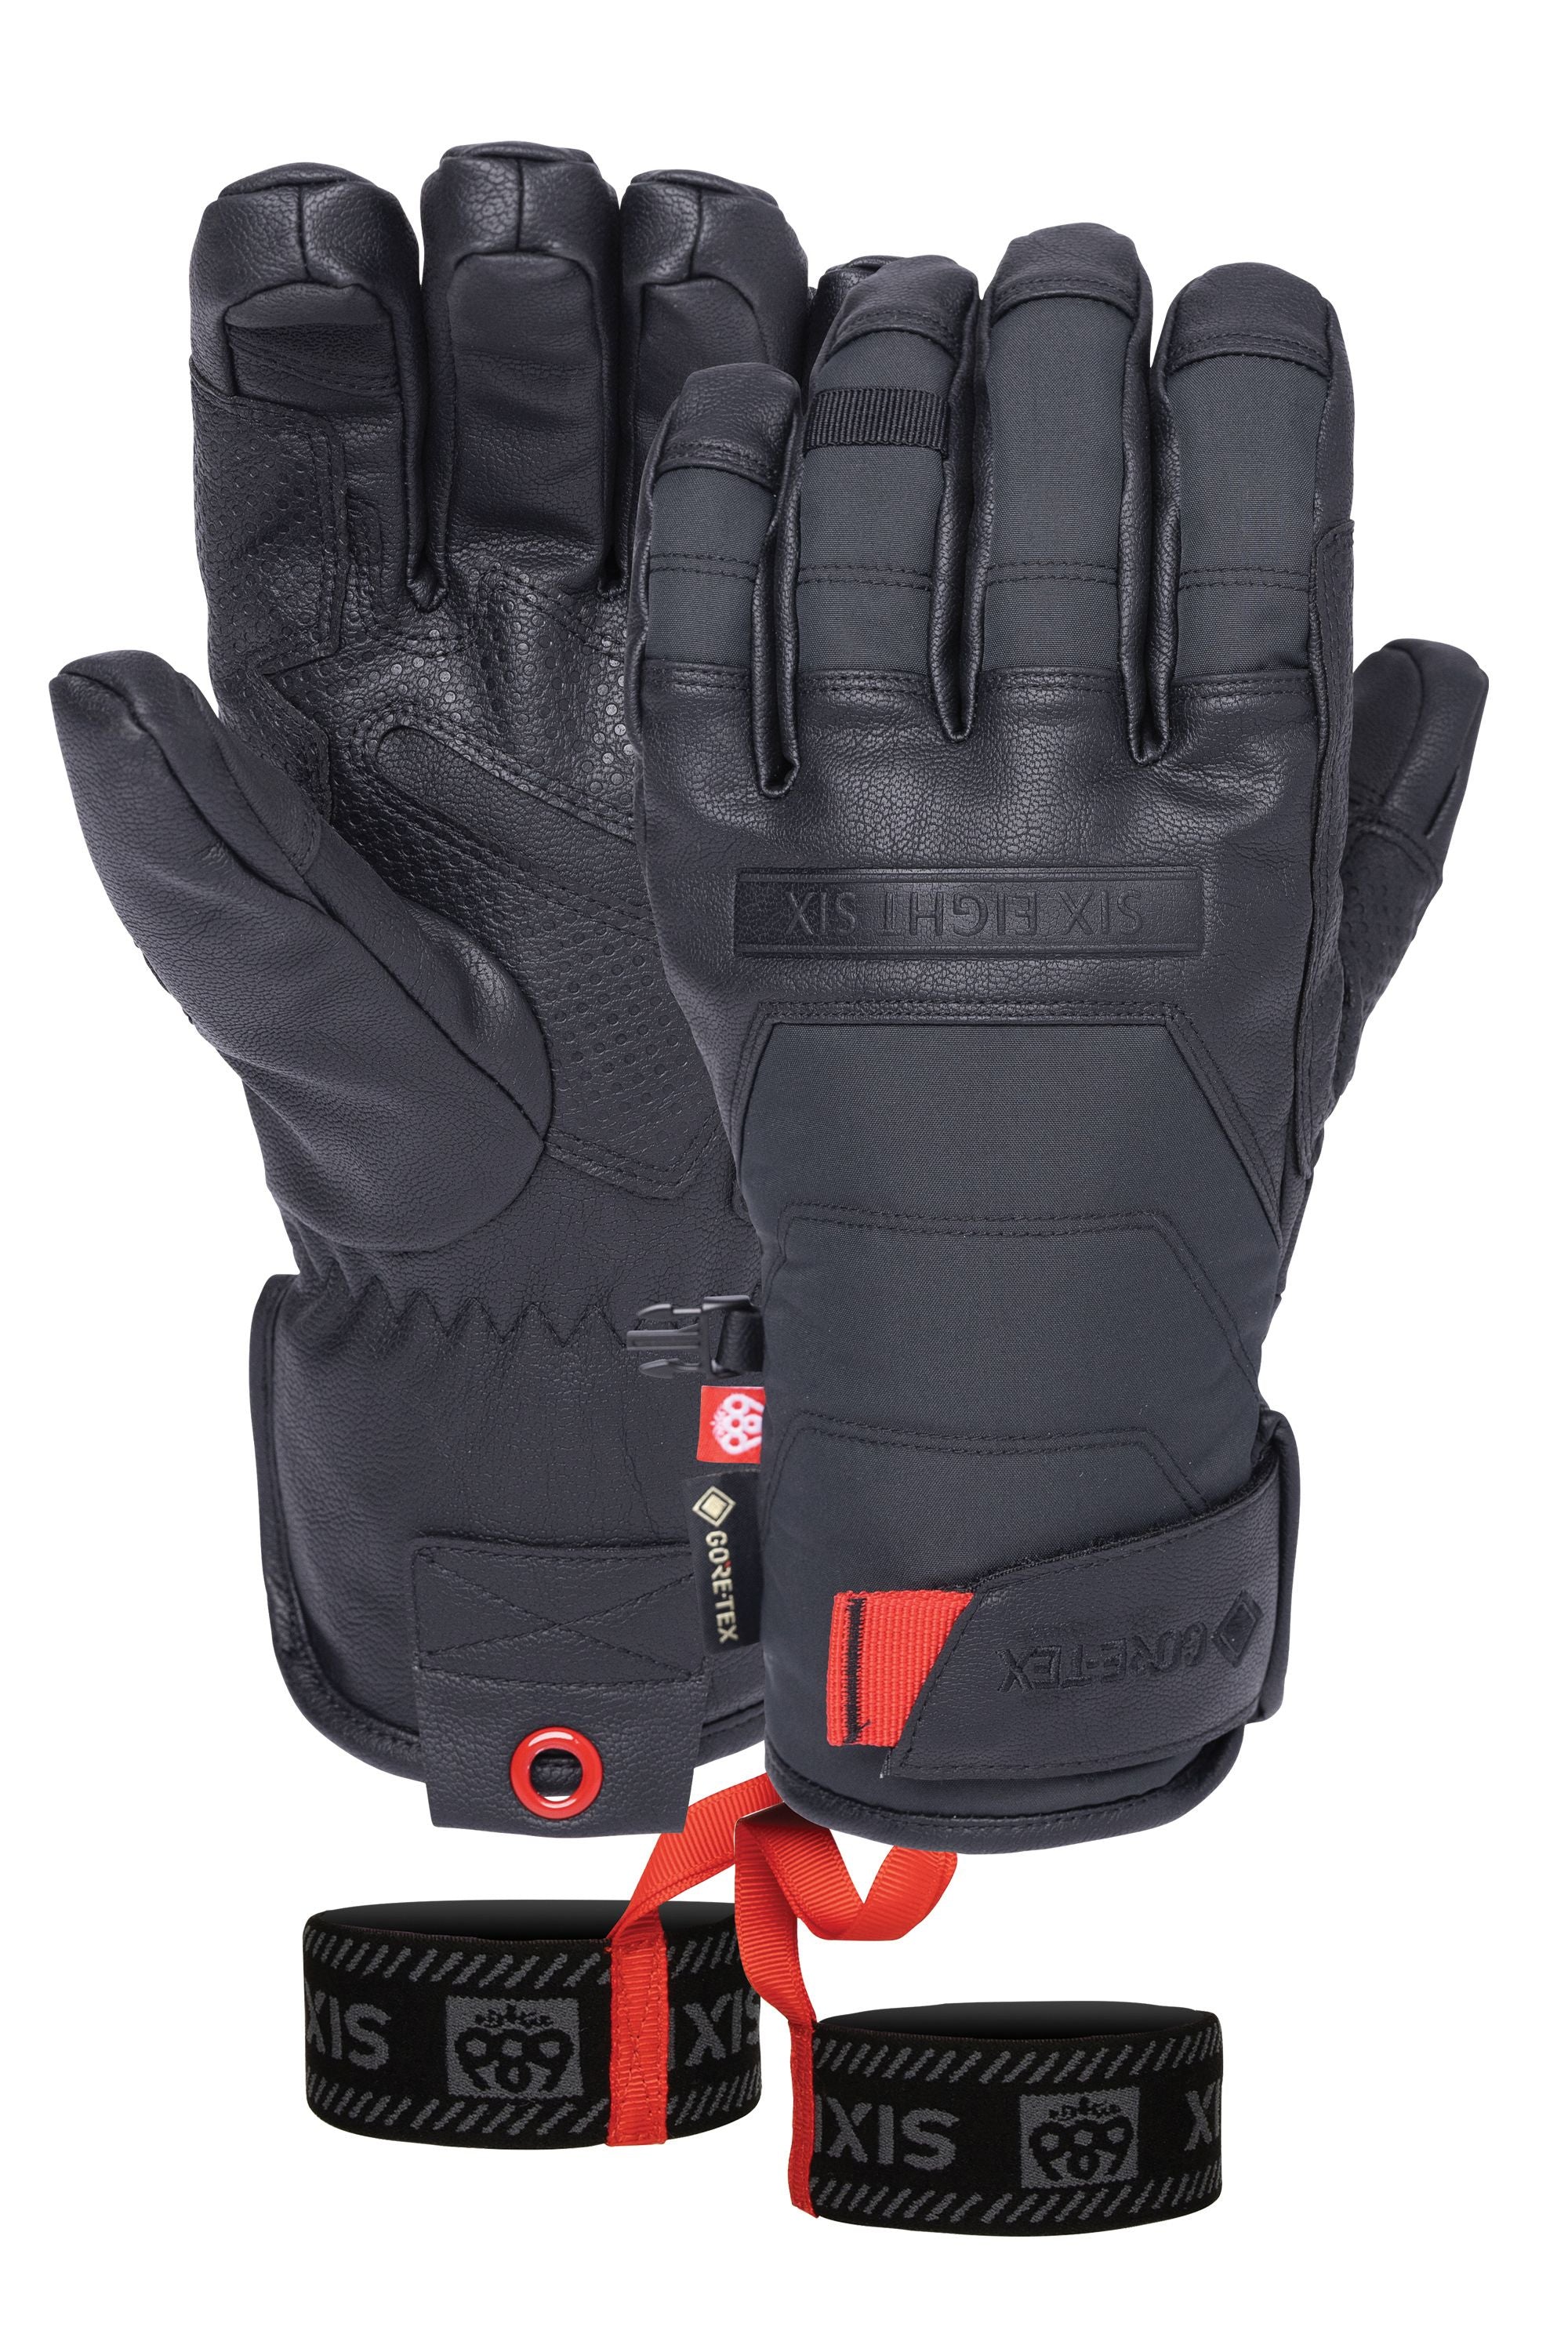 686 GORE-TEX Apex Glove Black Men's Snow Gloves 686 